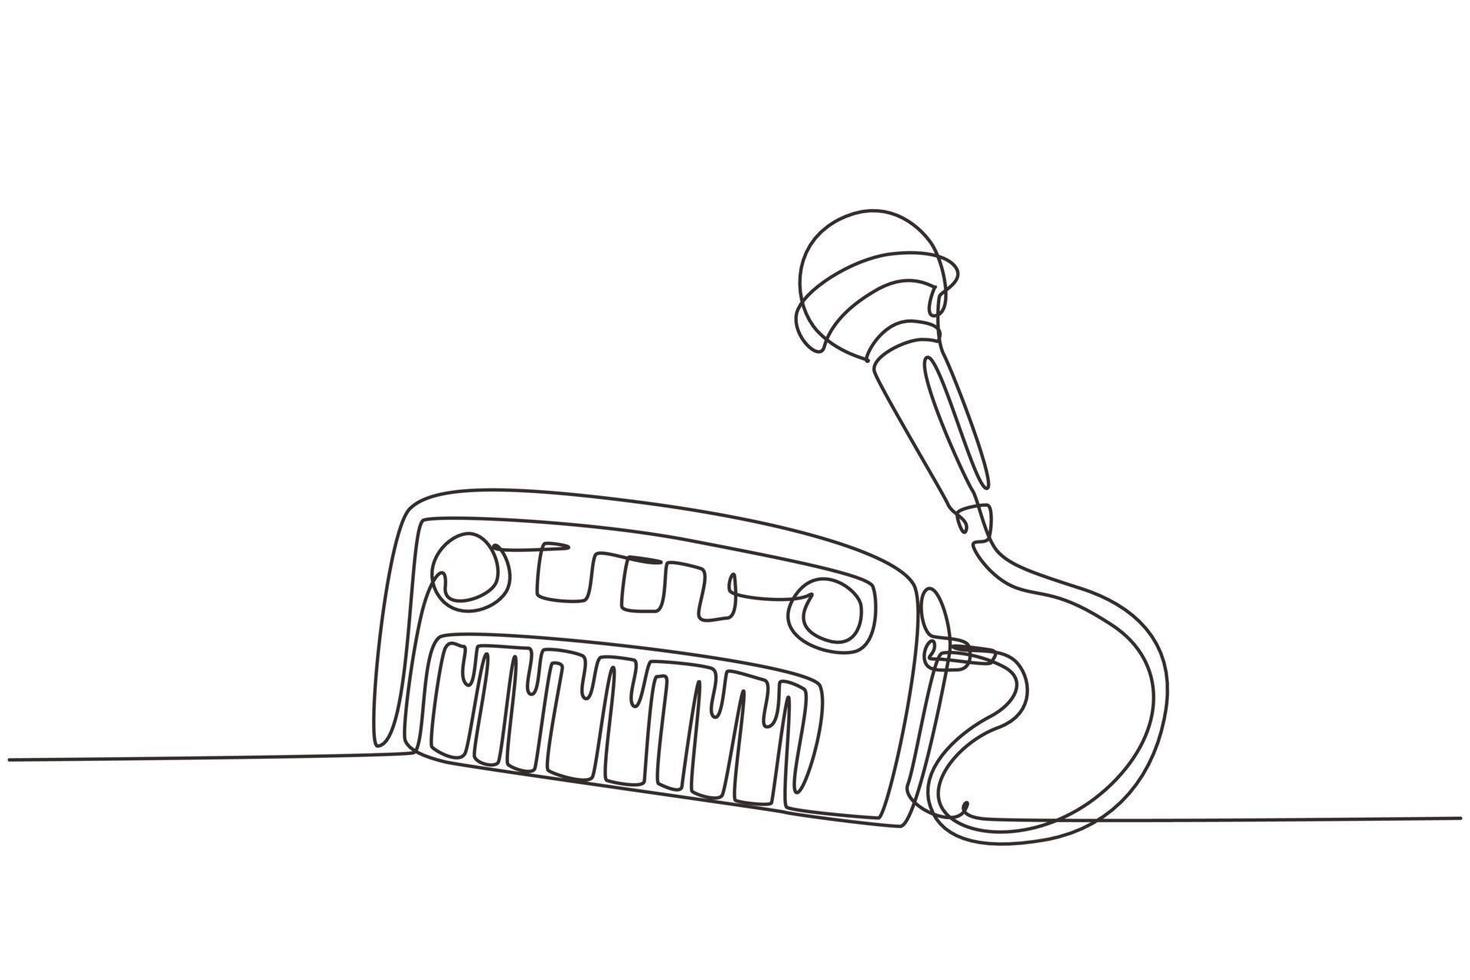 piano de juguete eléctrico de dibujo de una línea continua y micrófono. Piano musical para niños, piano electrónico, teclado de juguete, instrumento musical de juguete con micrófono para niños y niñas. vector de diseño de dibujo de una sola línea